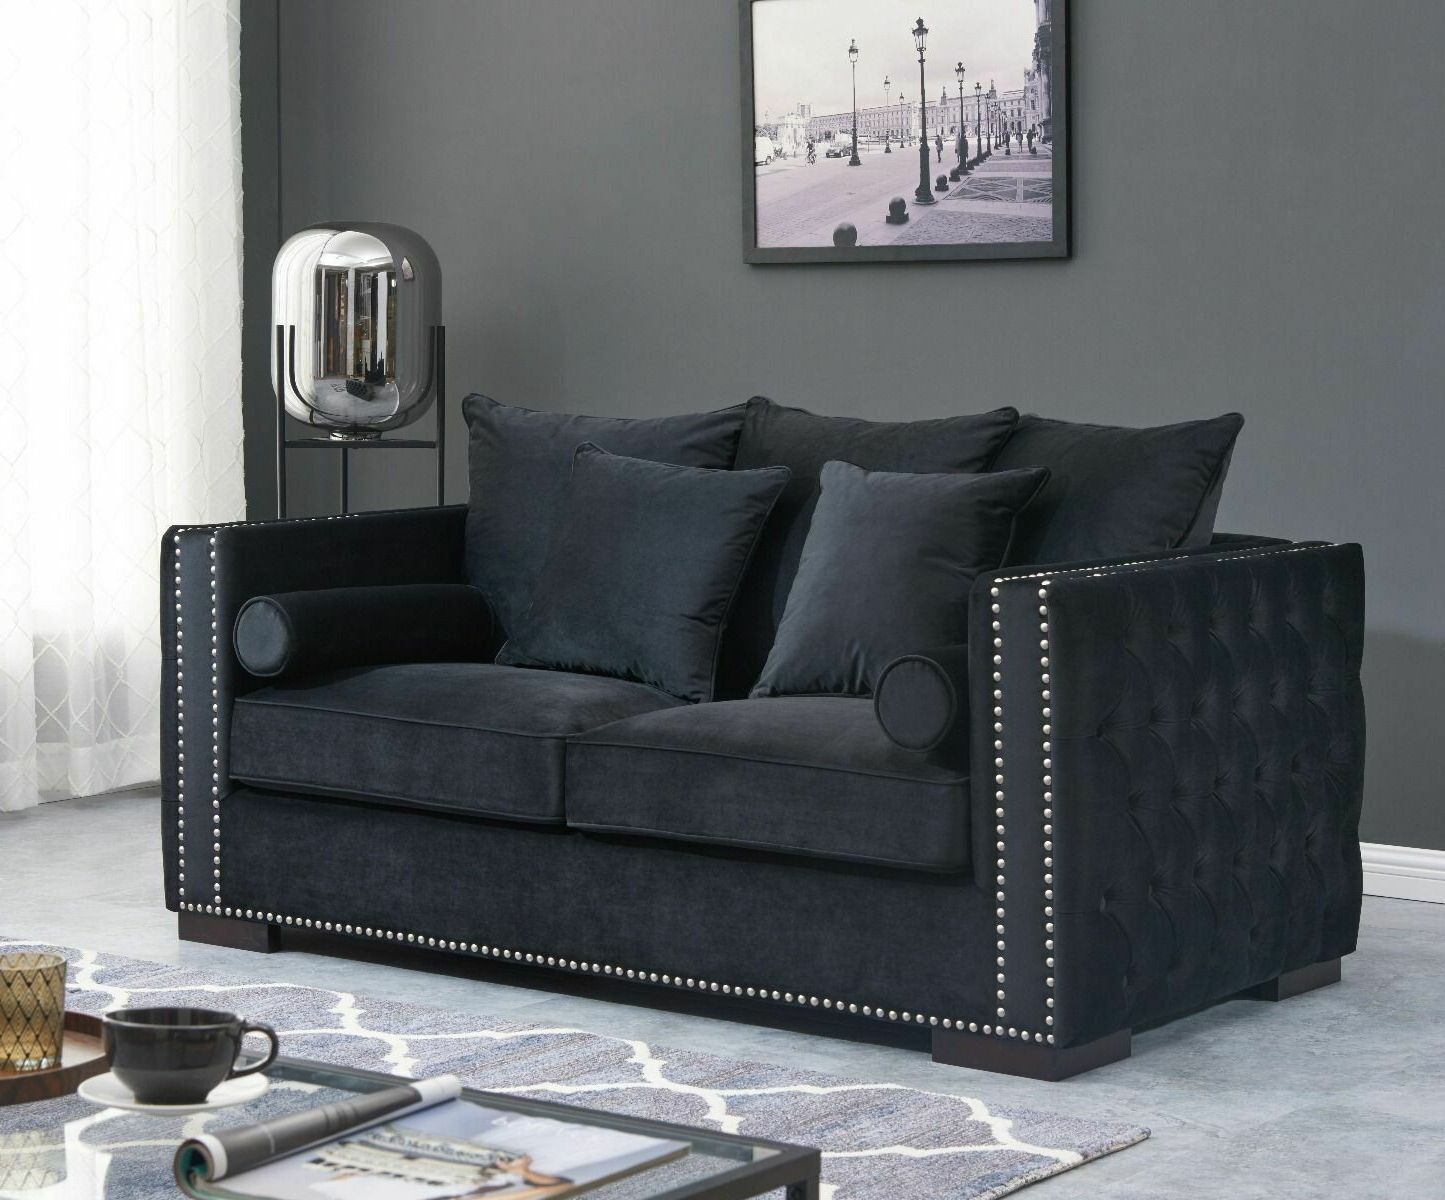 Saint James 2 Seater Black Velvet Sofa For Well Known 2 Seater Black Velvet Sofa Beds (View 2 of 15)